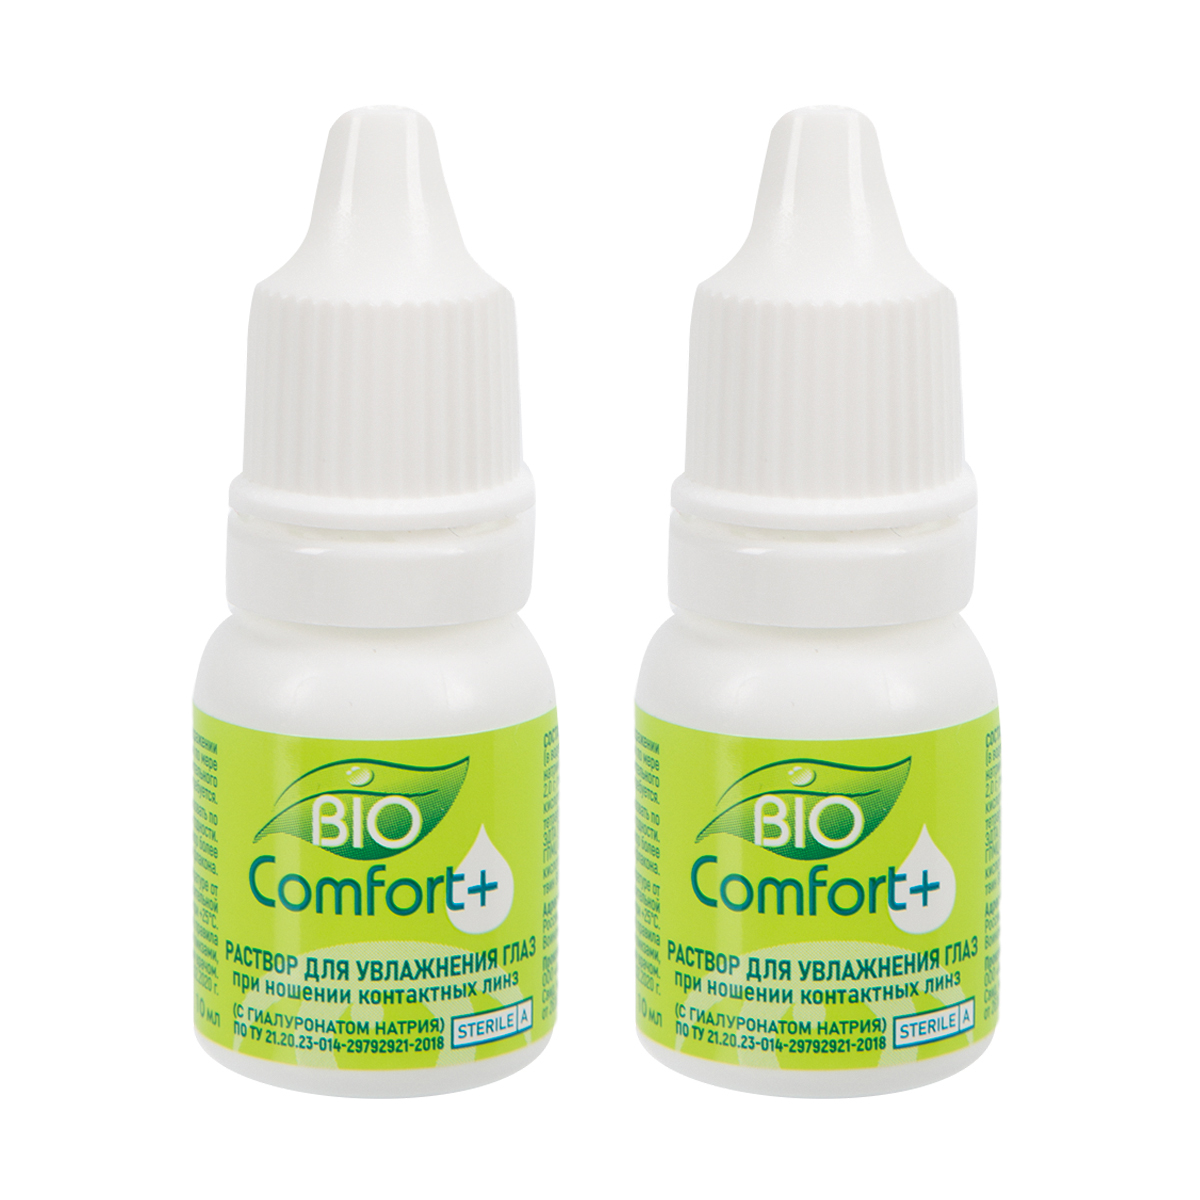 Раствор для увлажнения глаз Bio Comfort + (2 шт. по 10 мл)